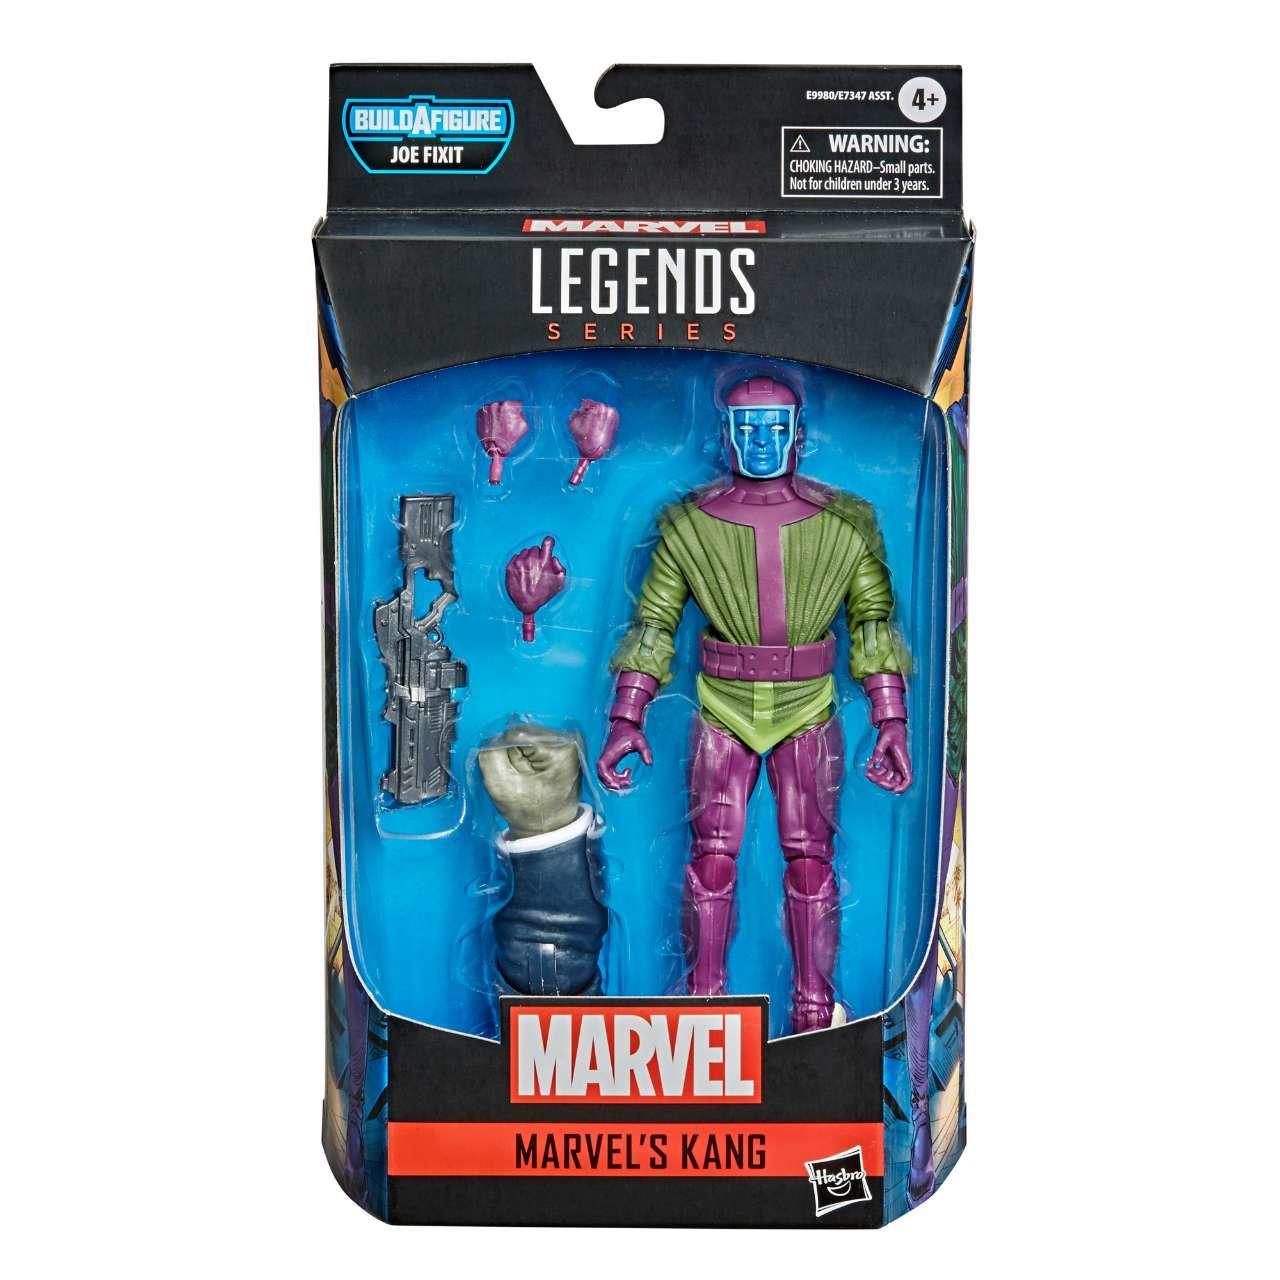 marvel-legends-series-6-inch-marvel-s-kang-figure-in-pck-1238677.jpg